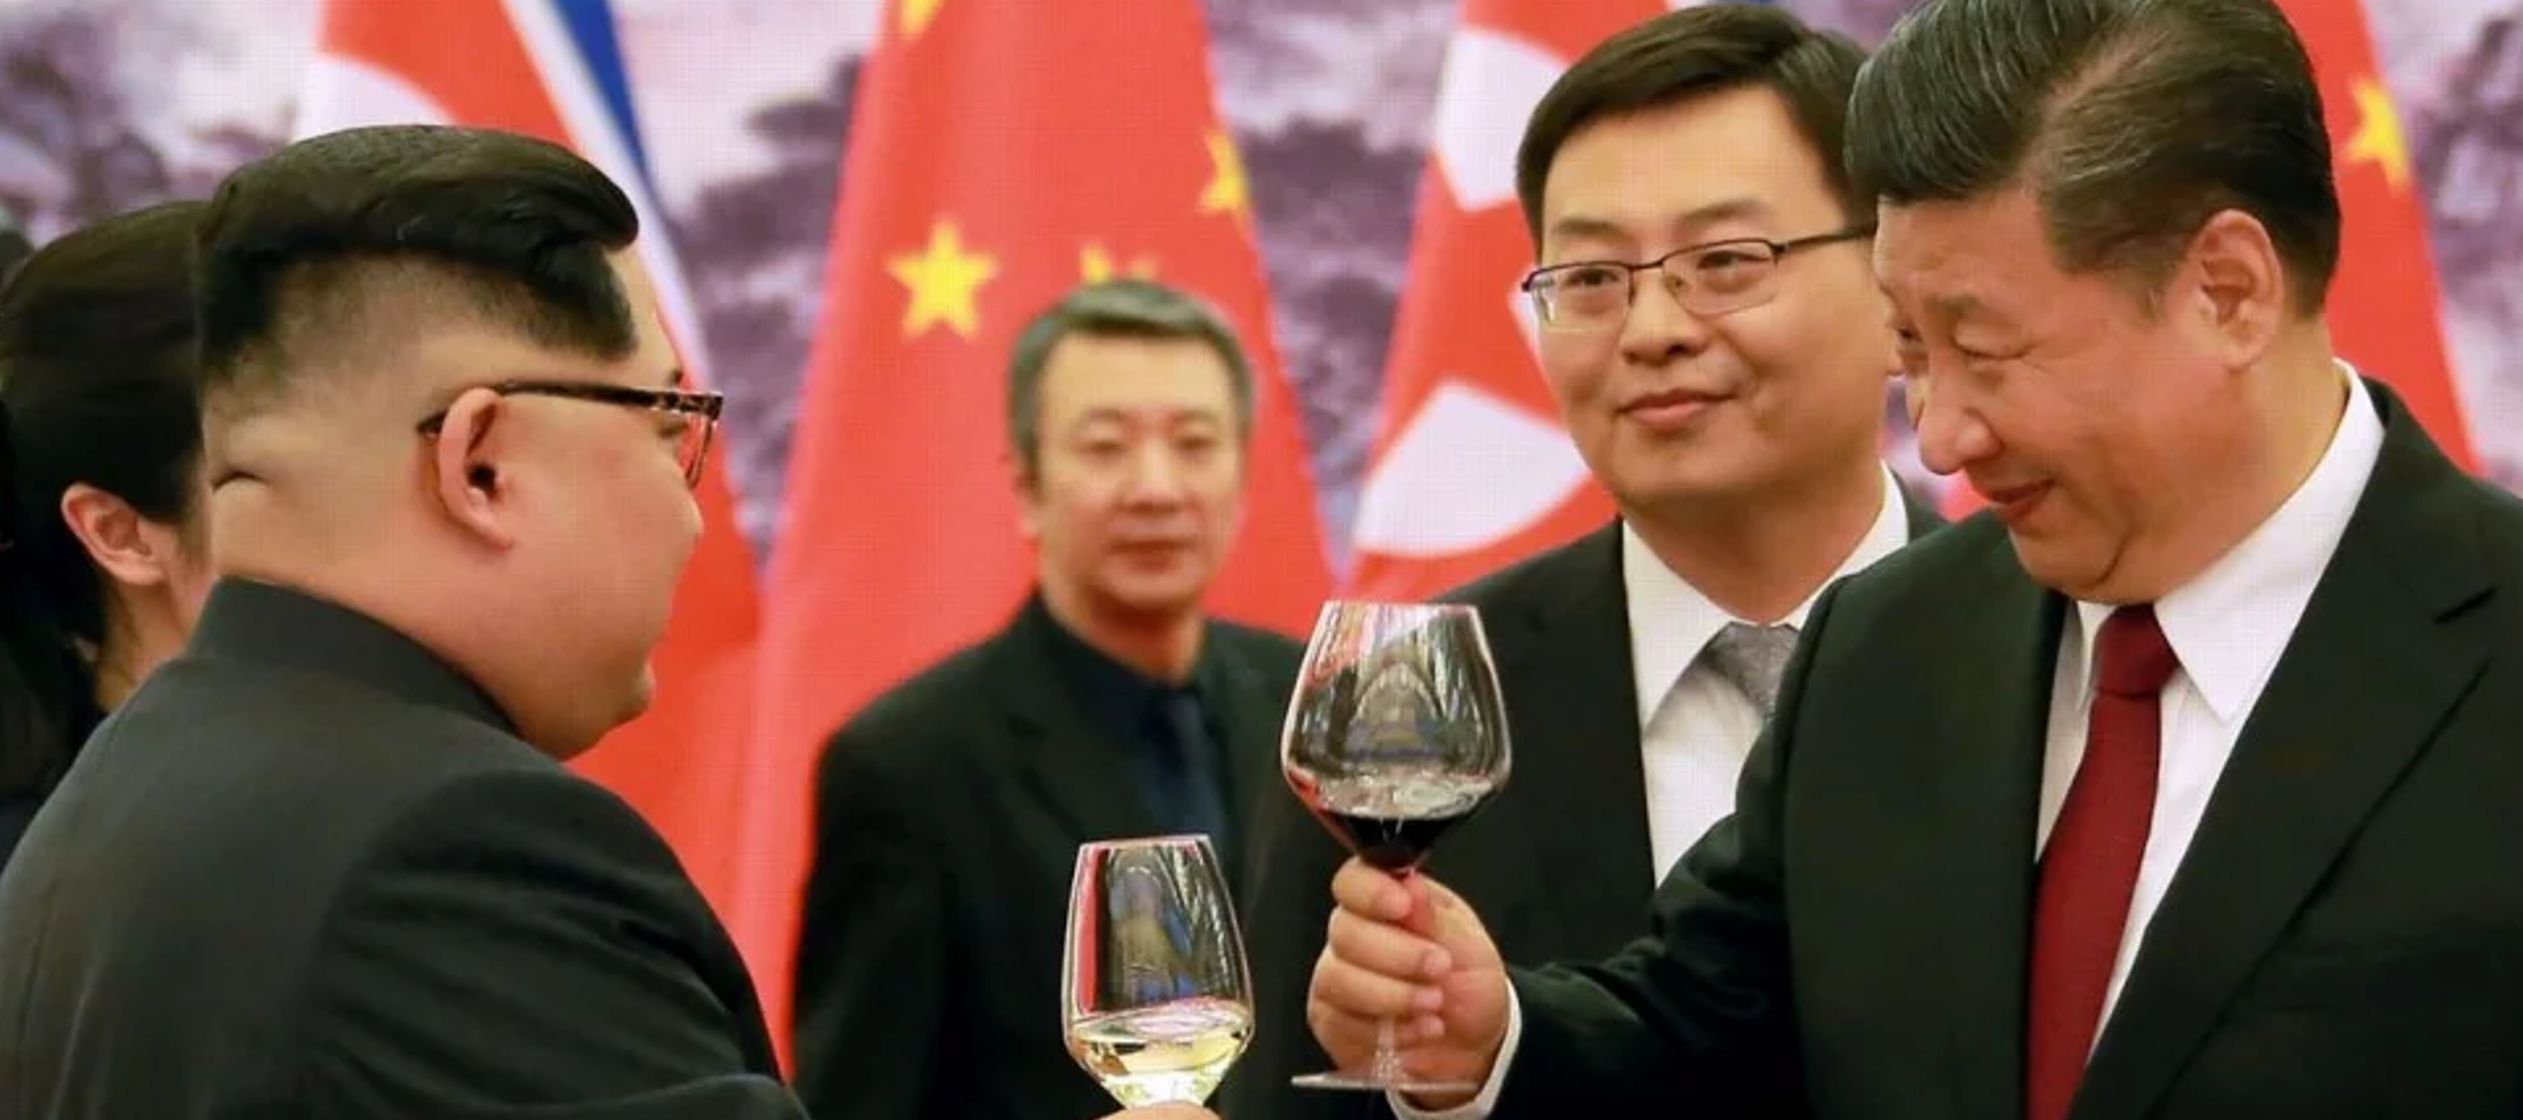 La emisora china CCTV reportó que Xi le dijo a Kim que "gracias a los esfuerzos...